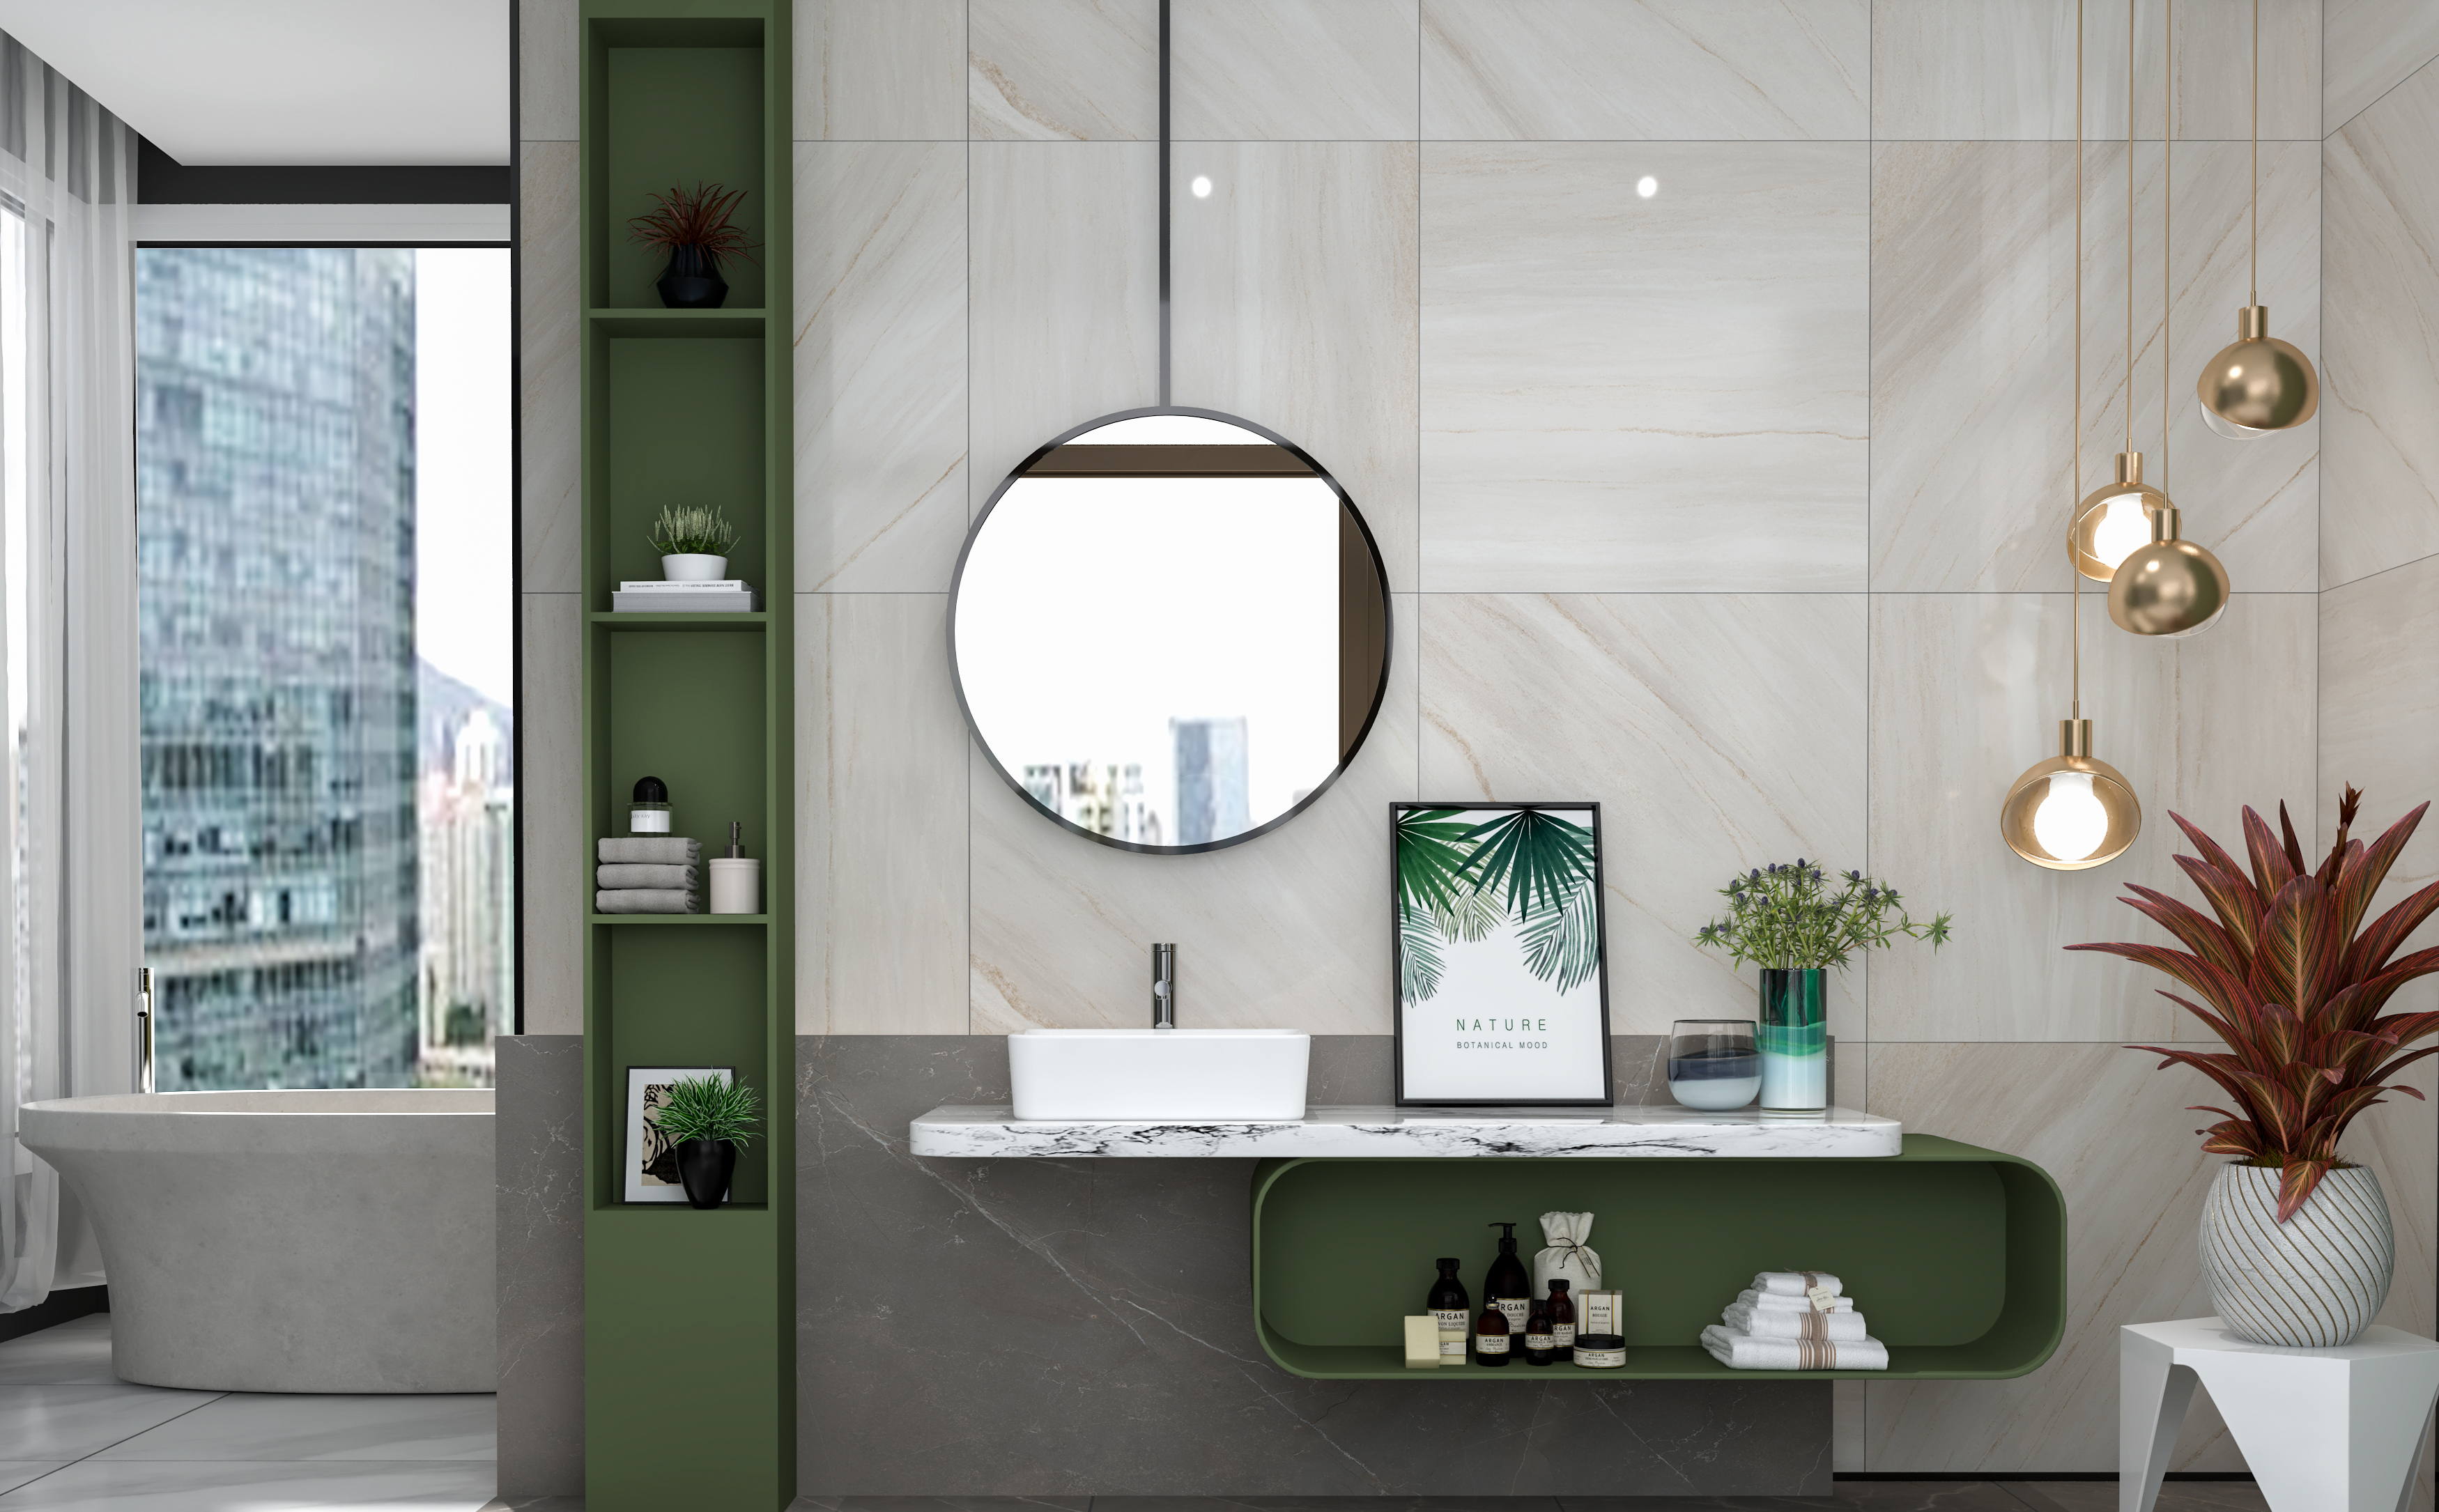 MEJE 19×15-Zoll-Badezimmer-Waschbecken, weißes Rechteck über der Arbeitsplatte, Kunstwaschbecken aus Porzellankeramik, Waschbecken für Toiletten-Waschtischunterschrank